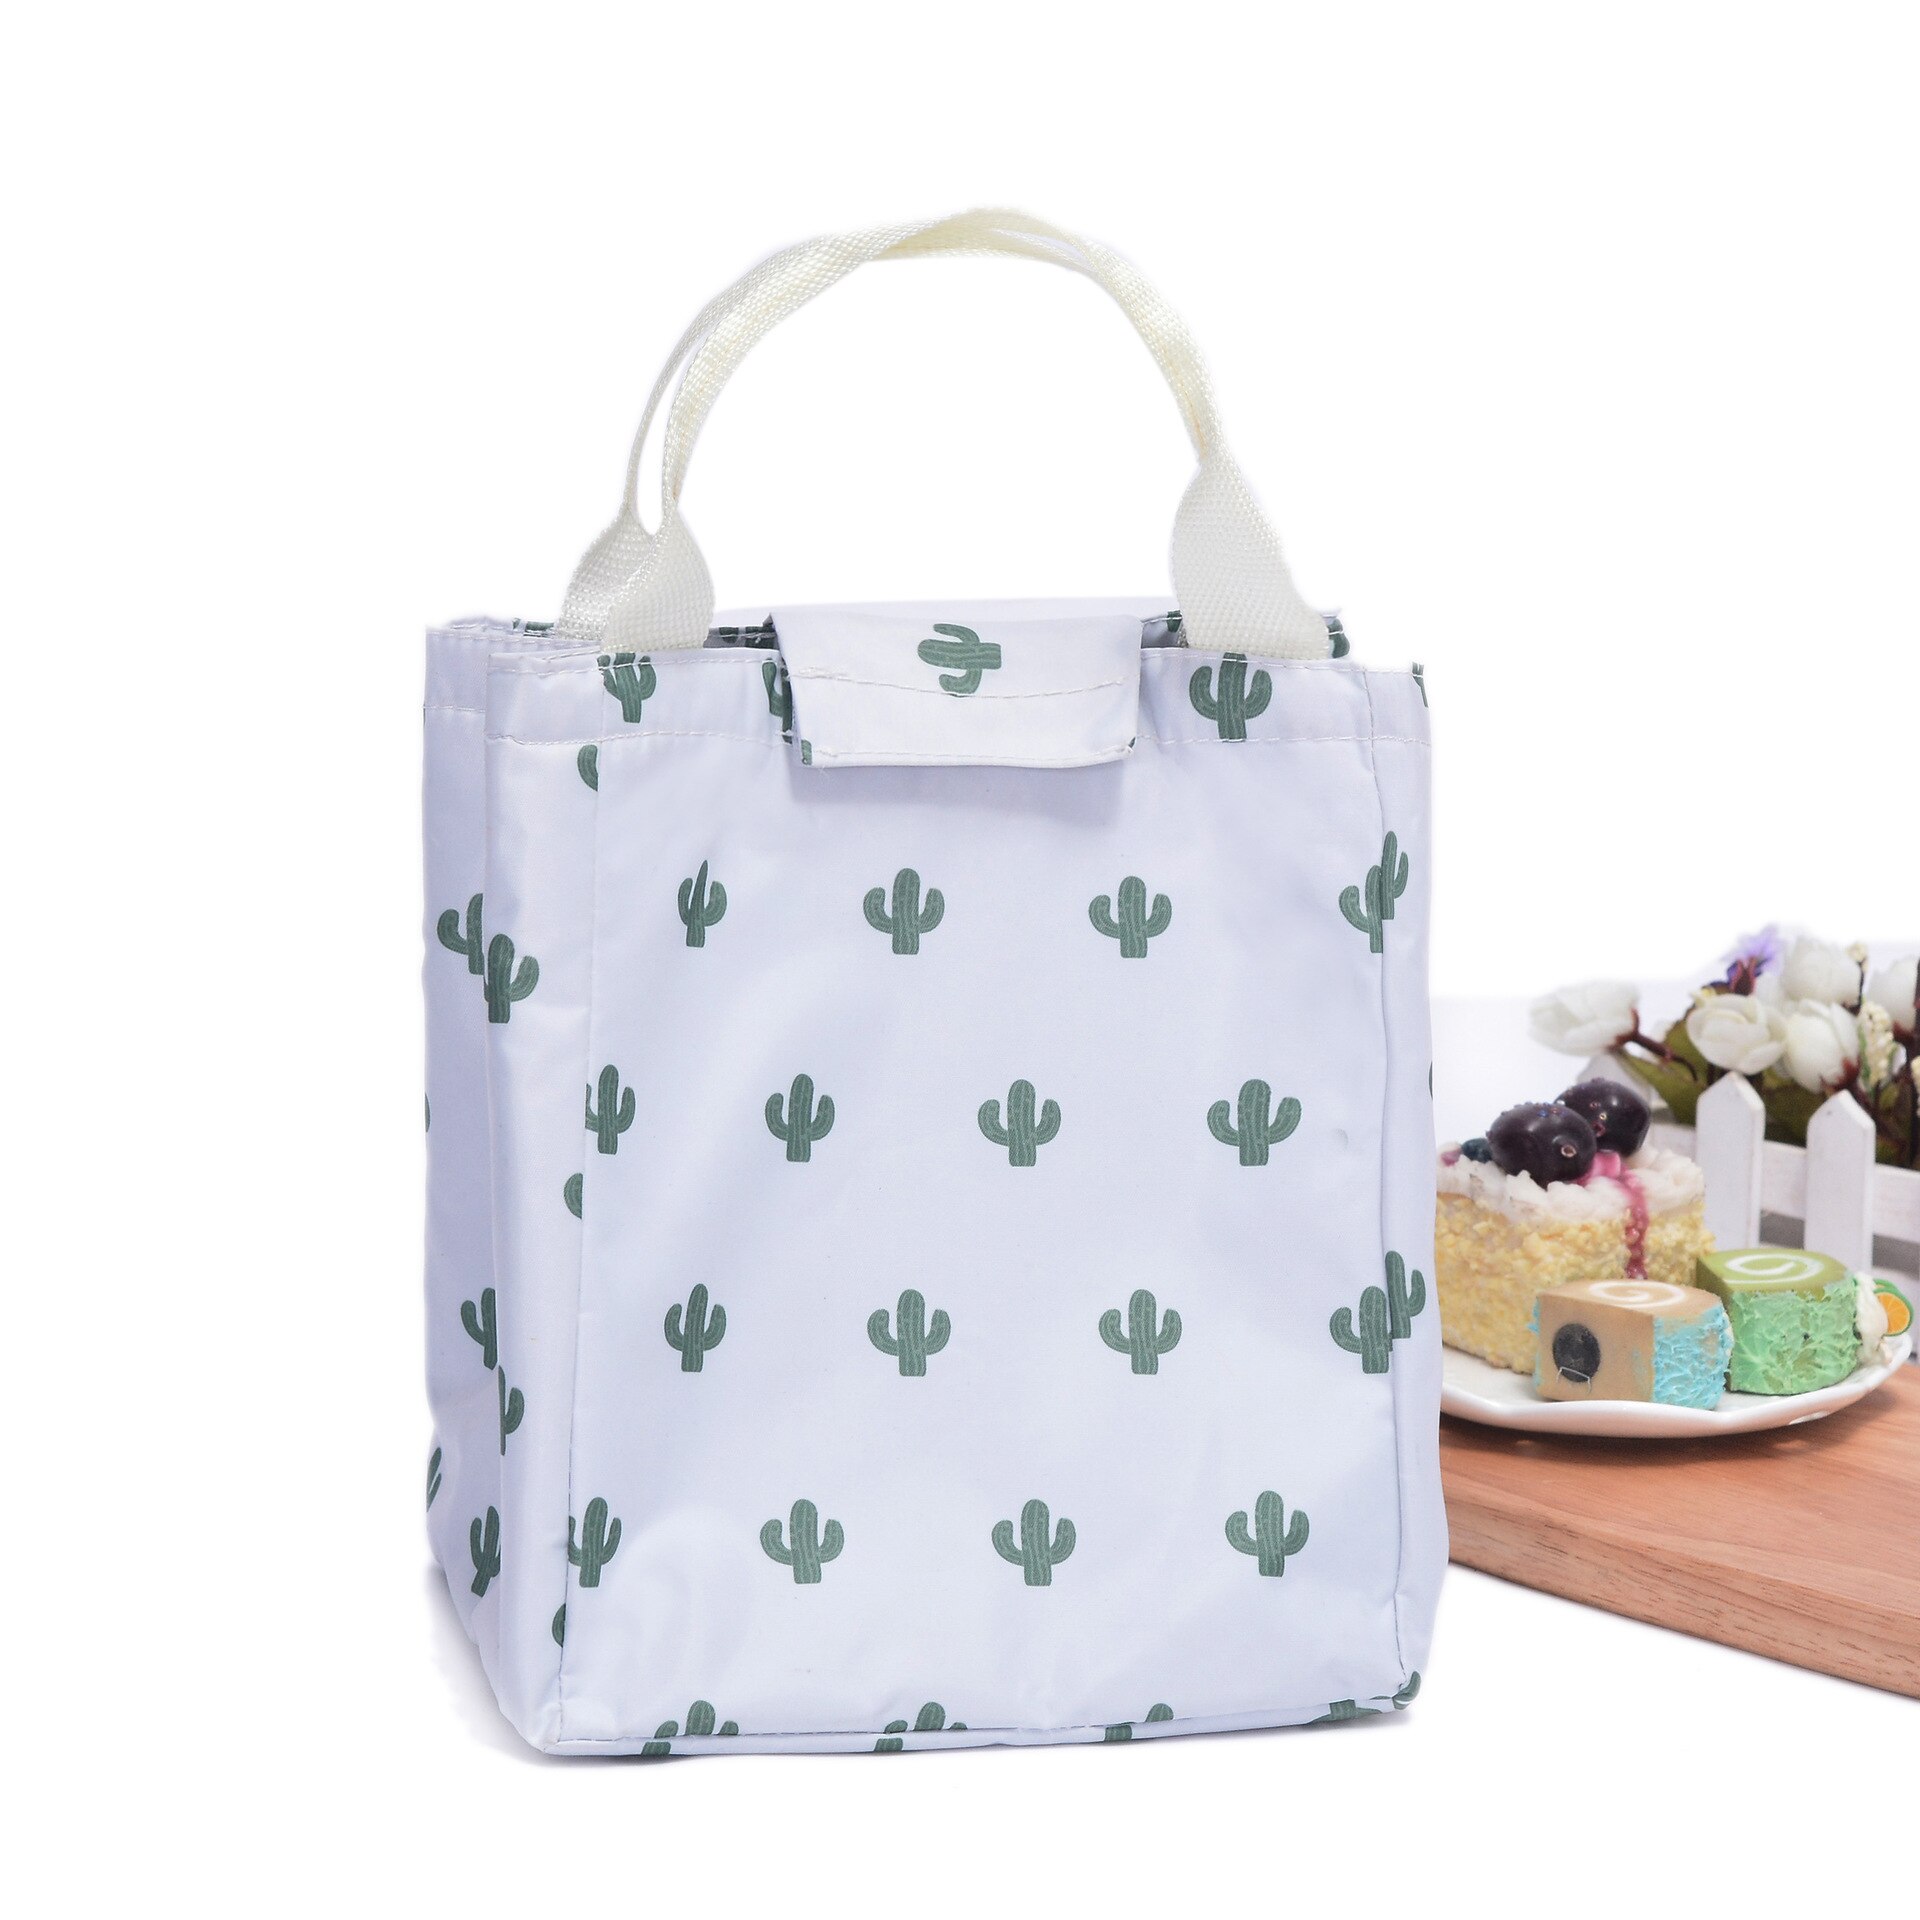 Tyk hånd bento frokostpose koldisolering isoleret taske udendørs picnic isoleret friskhed madpose: Kaktus